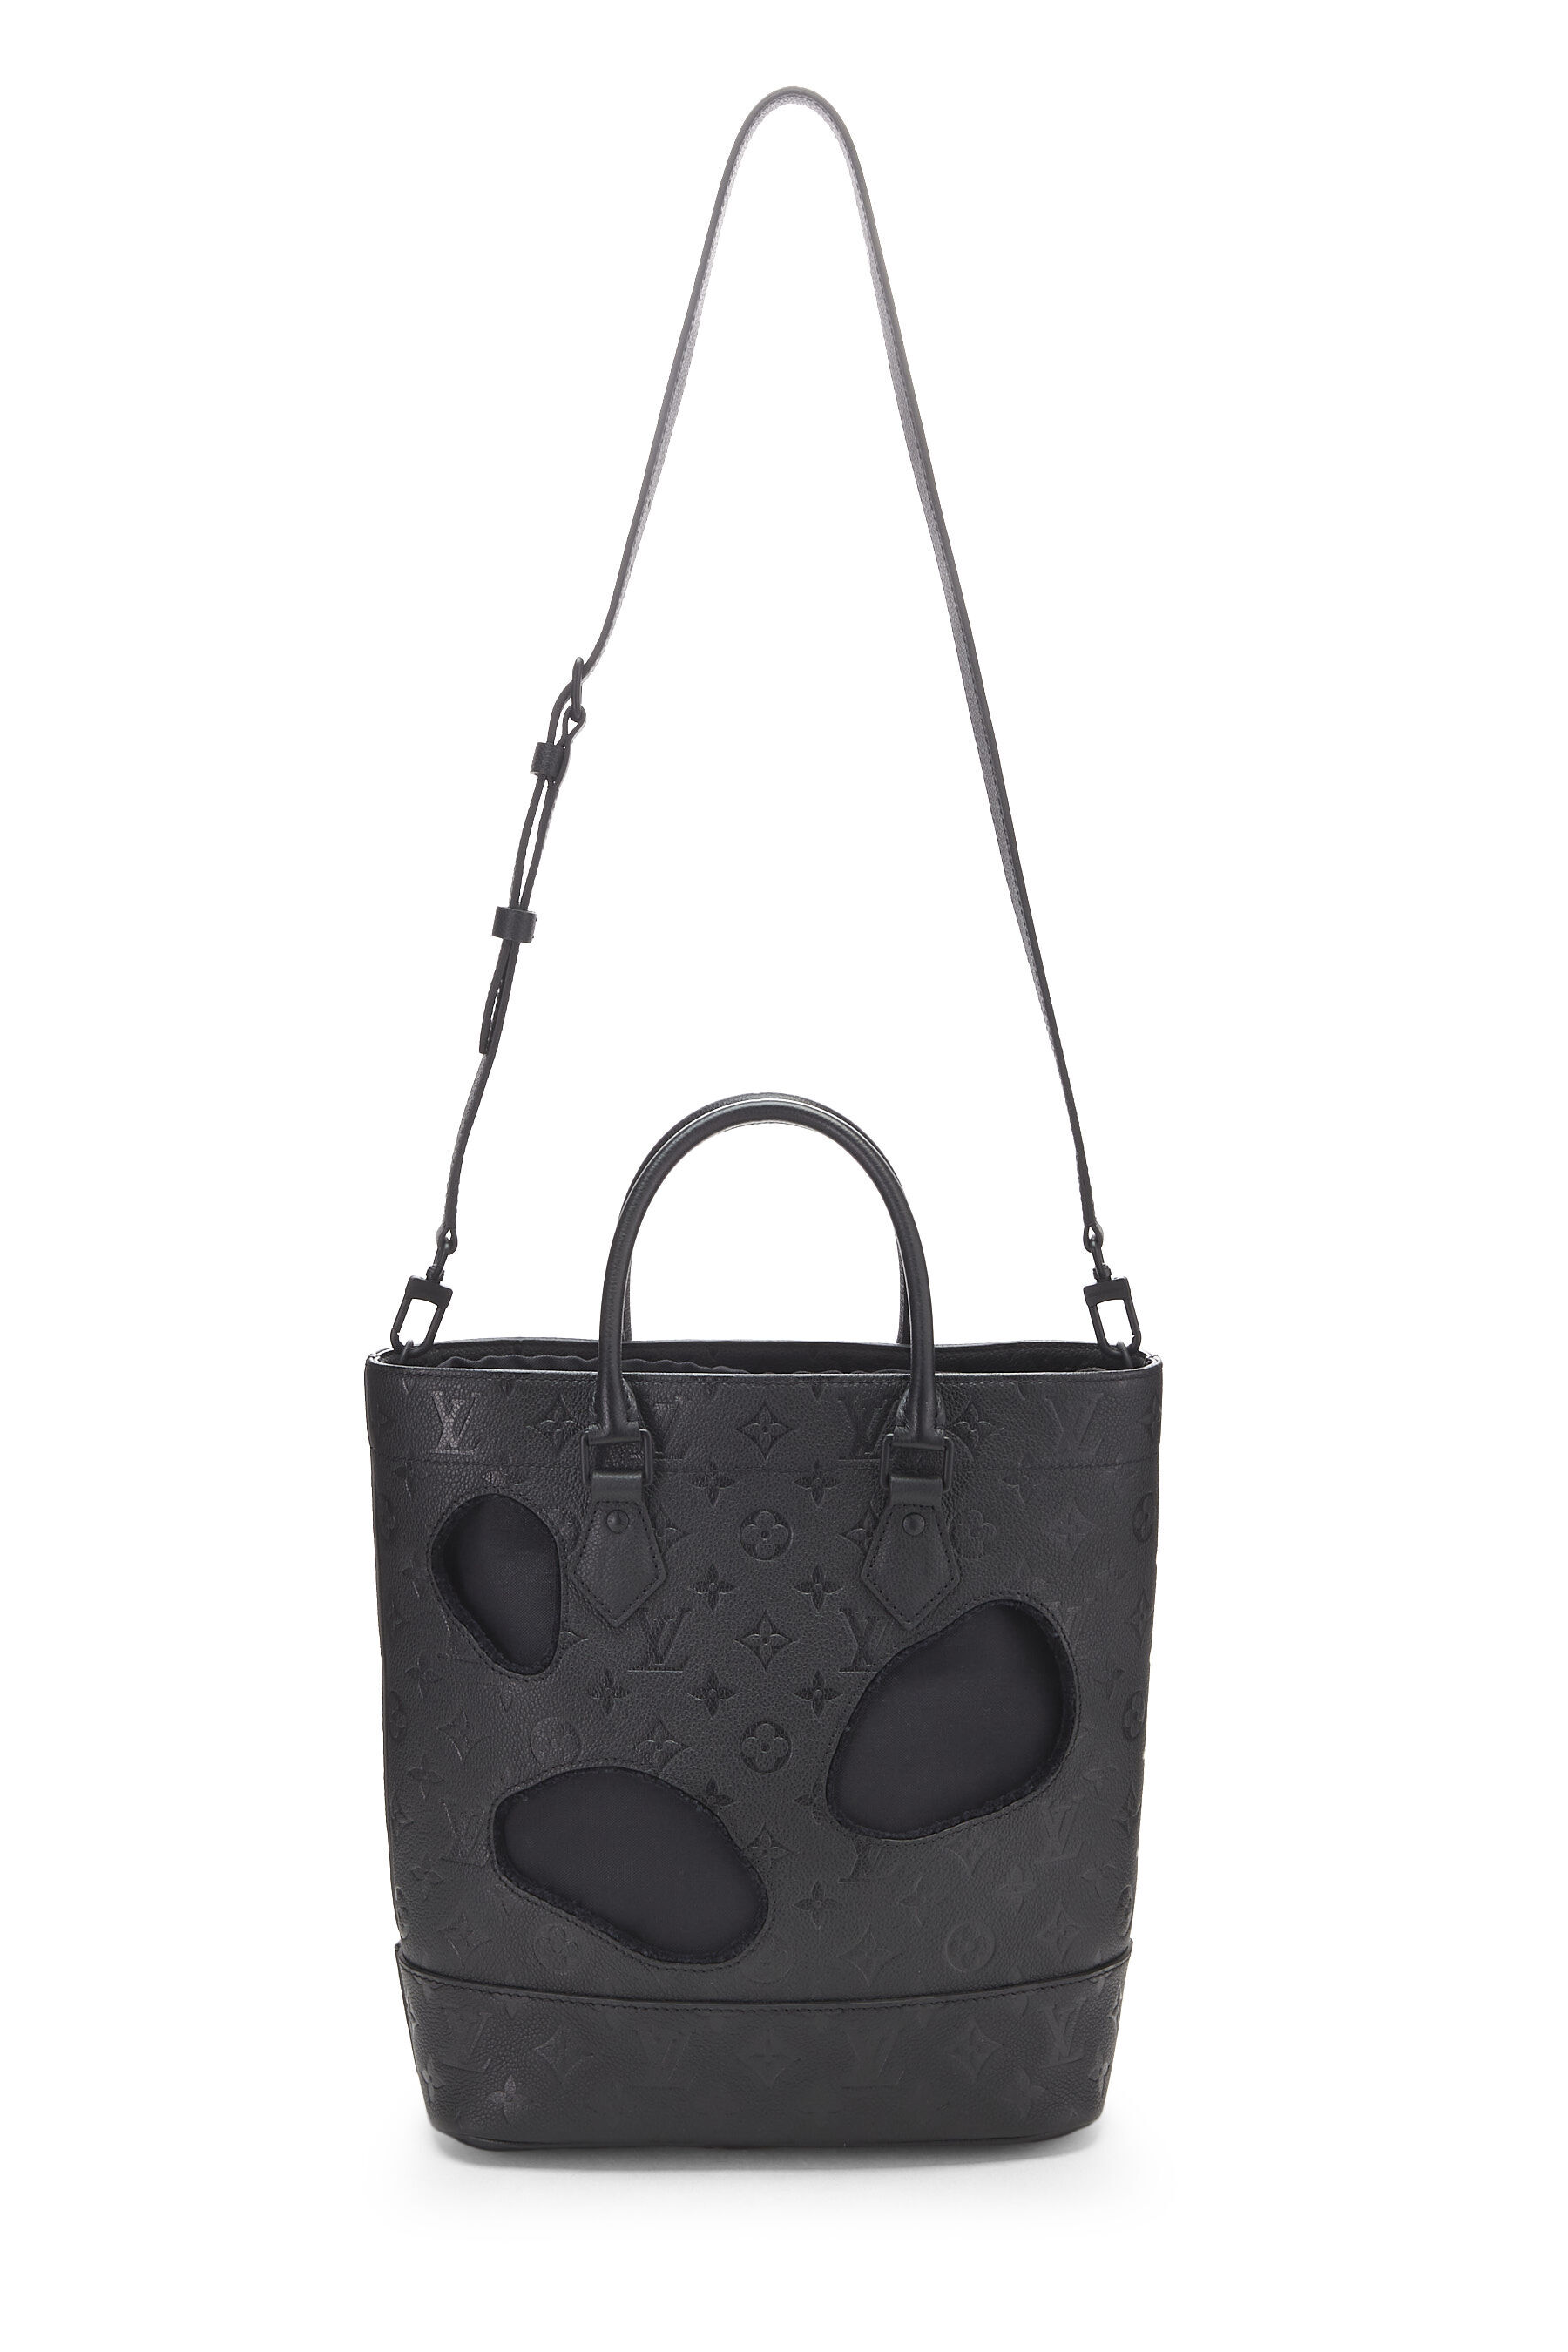 Comme des Garçons x Louis Vuitton Black Monogram Empreinte Bag 